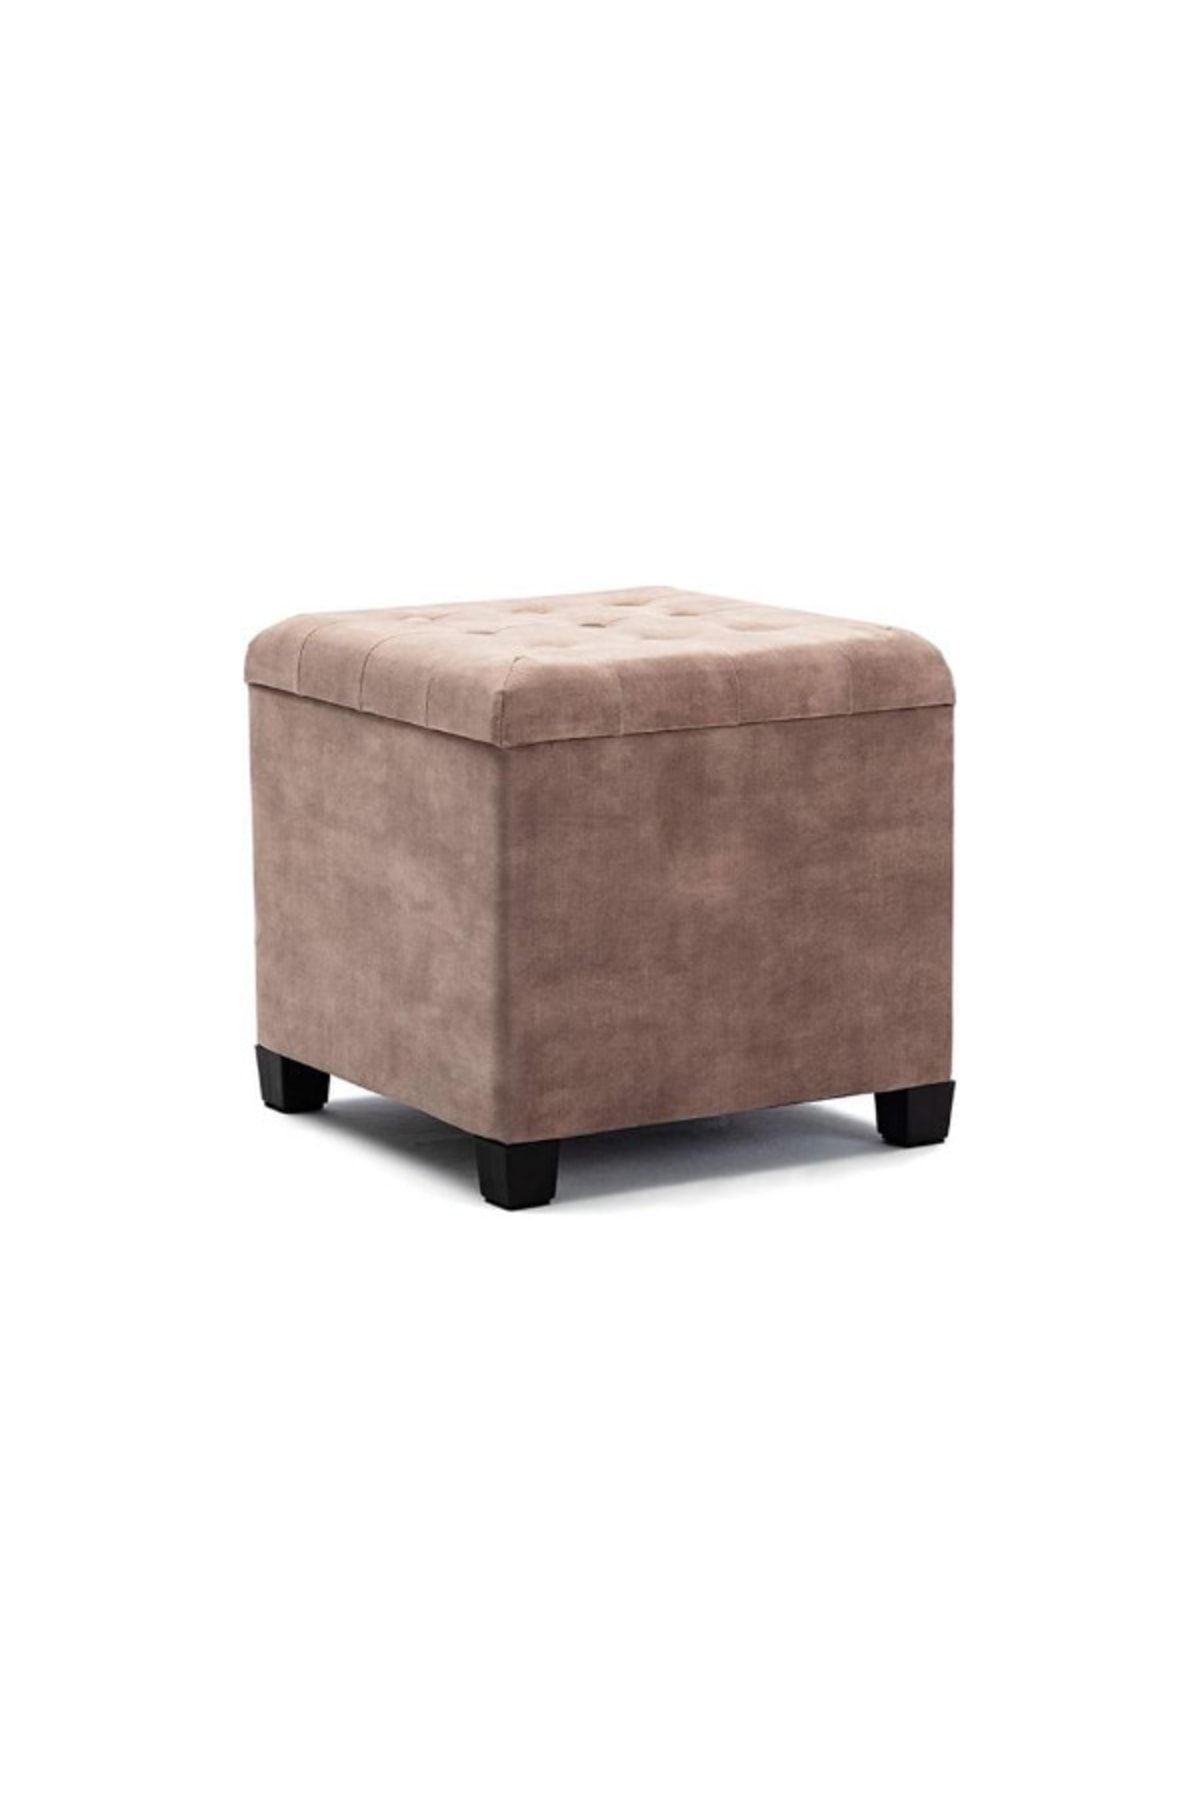 Bilgin Design Sandıklı Kare Puf Bench Bronz Renk Düğmeli Şık Ev Mobilyaları Koltuk Sandalye Sehpa